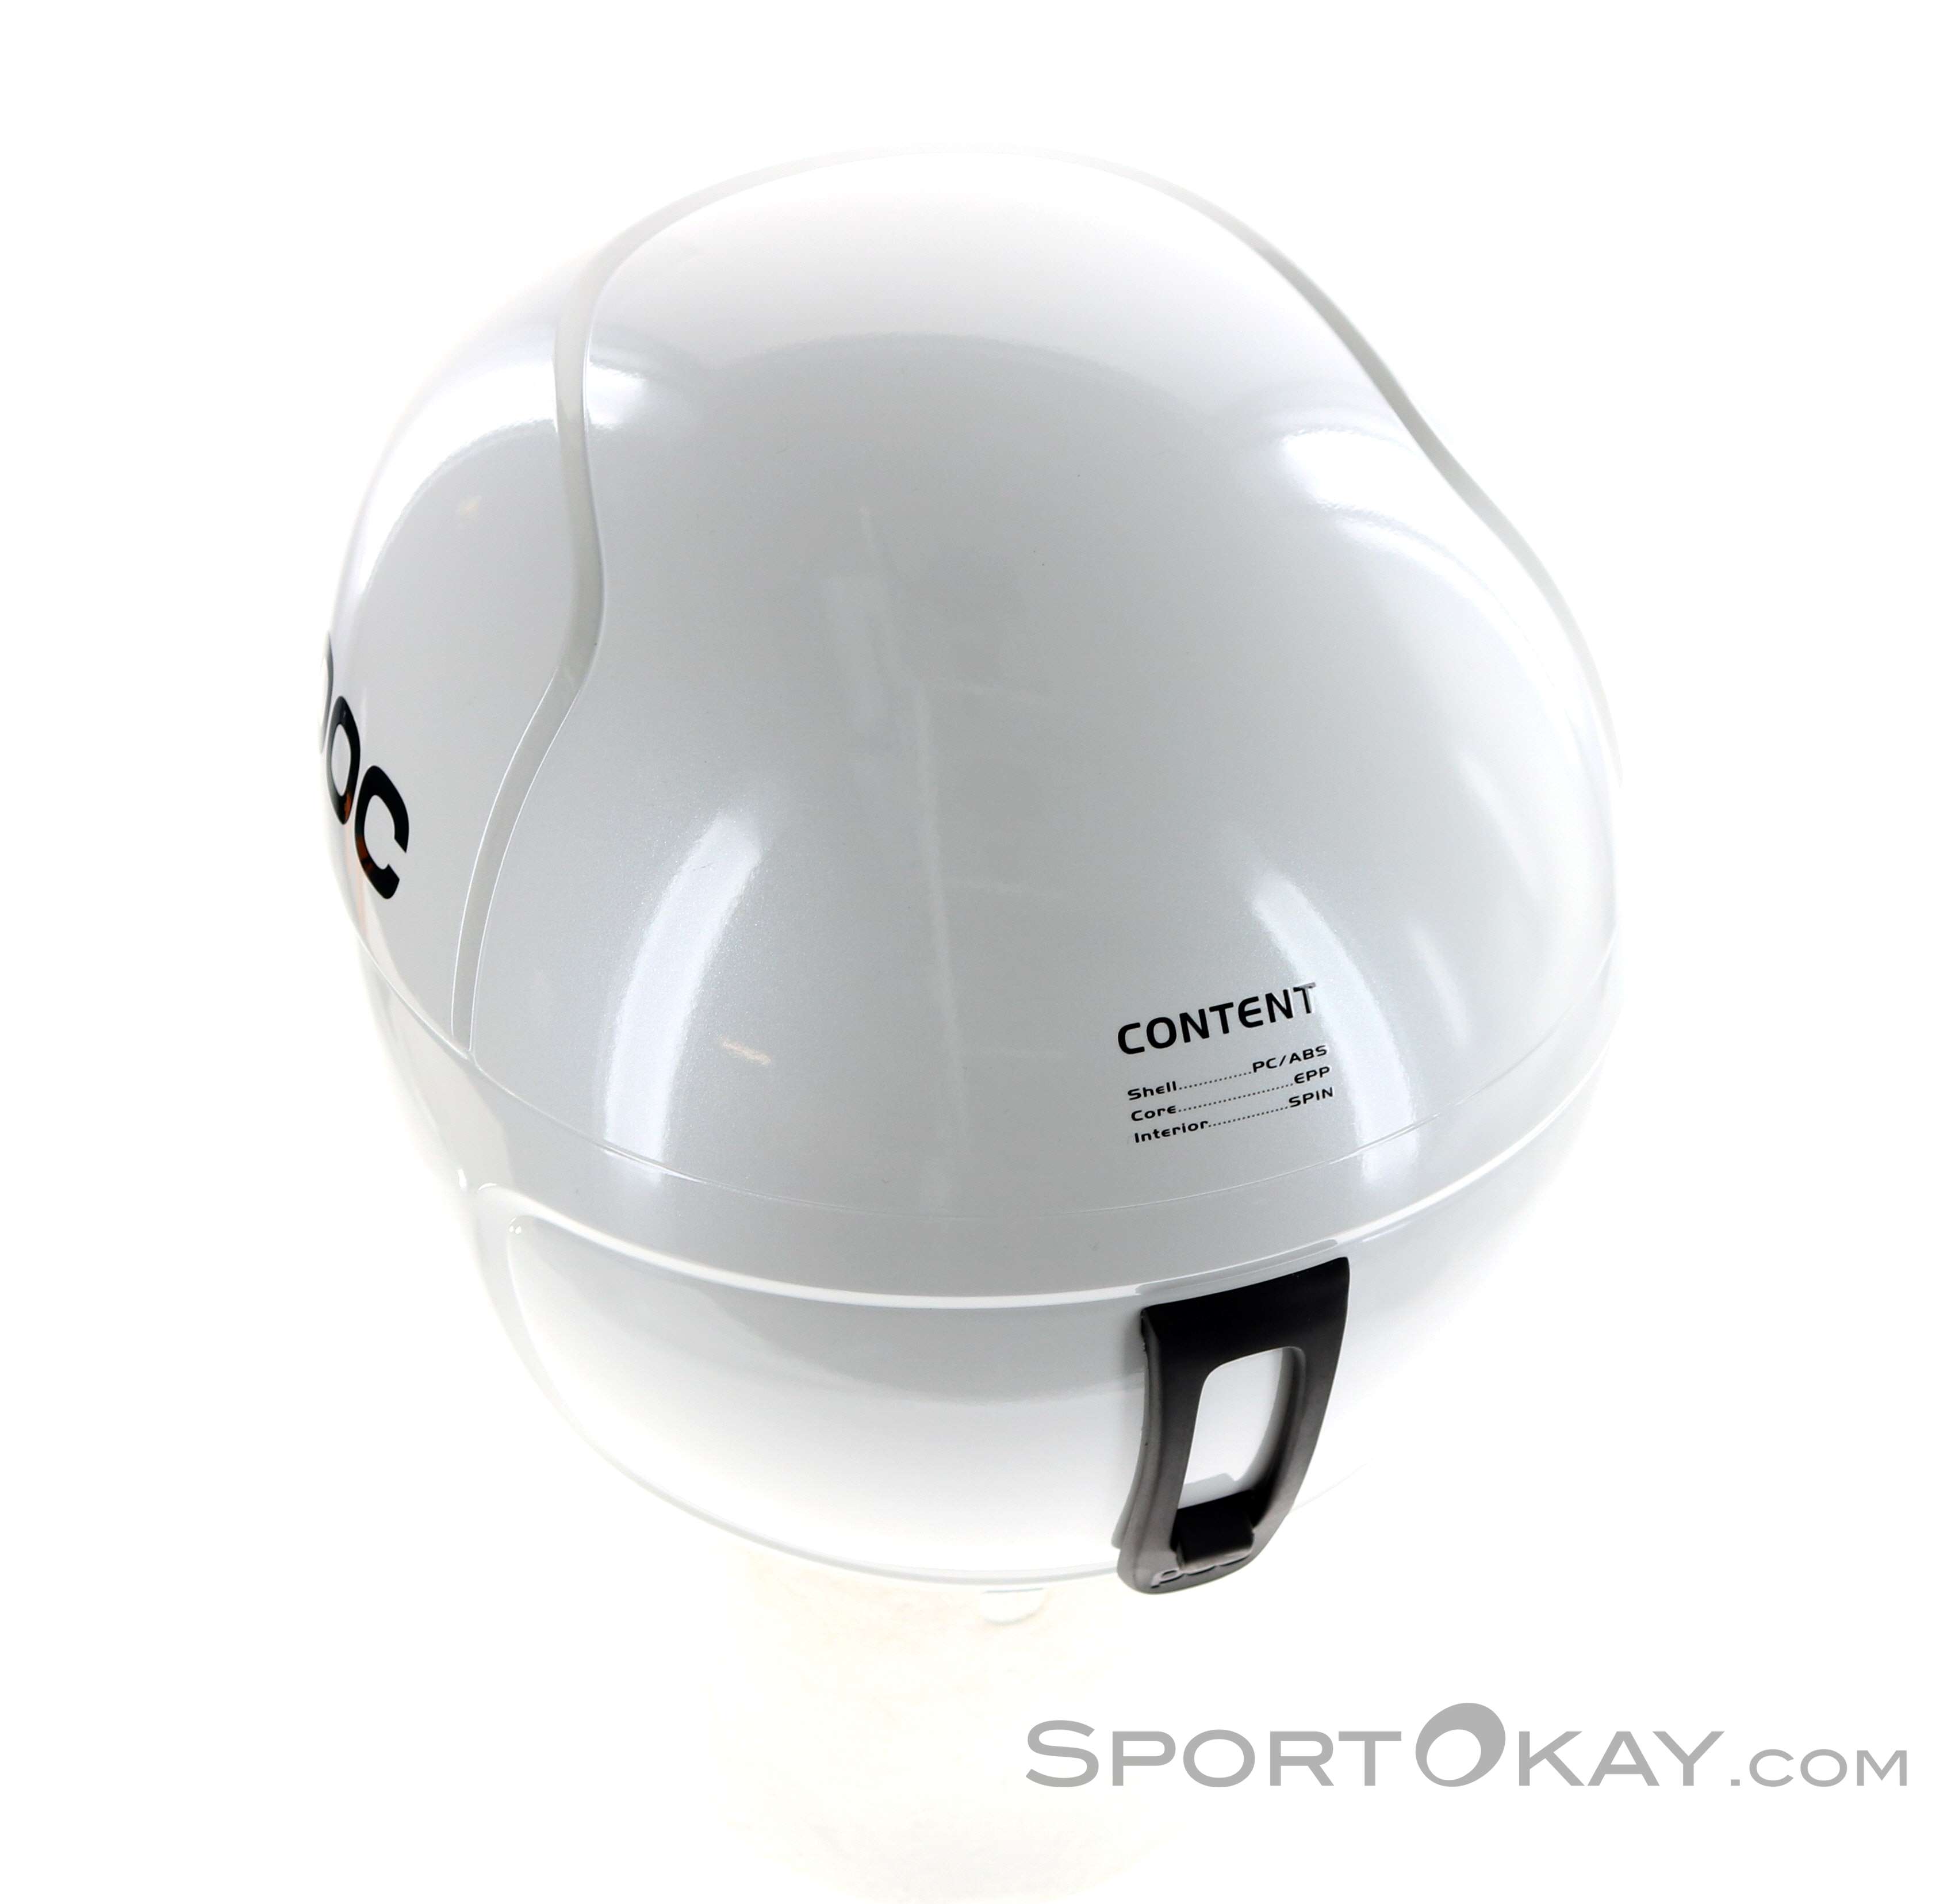 POC Skull Orbic X Spin Helmet White - Ski Center Heemskerk